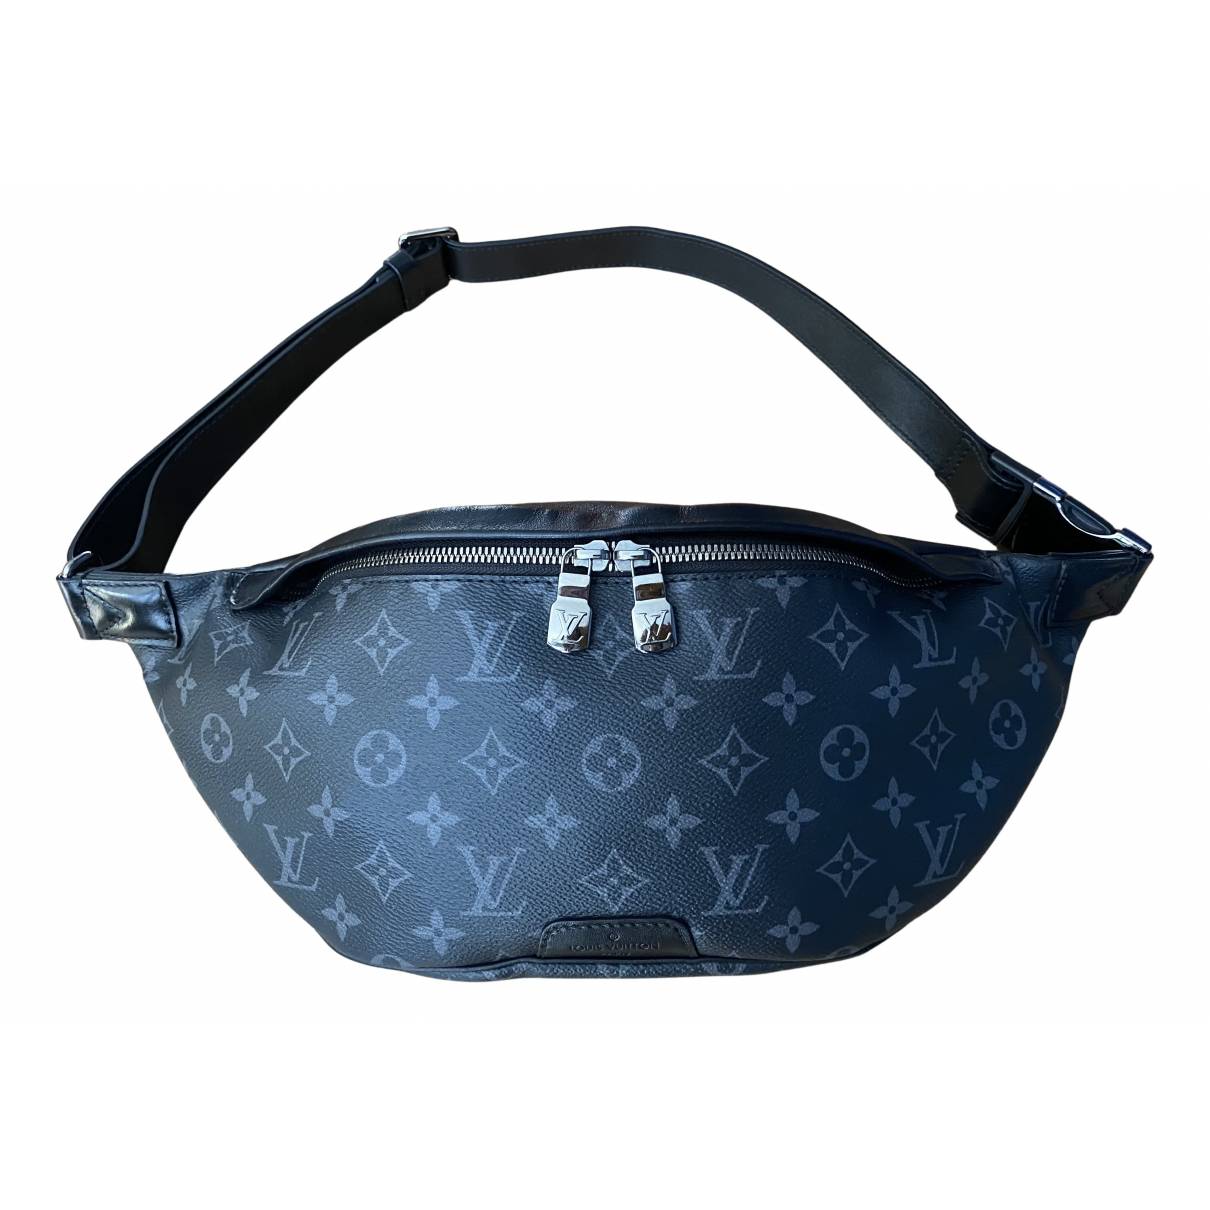 Bum bag / sac ceinture cloth belt bag Louis Vuitton Black in Cloth